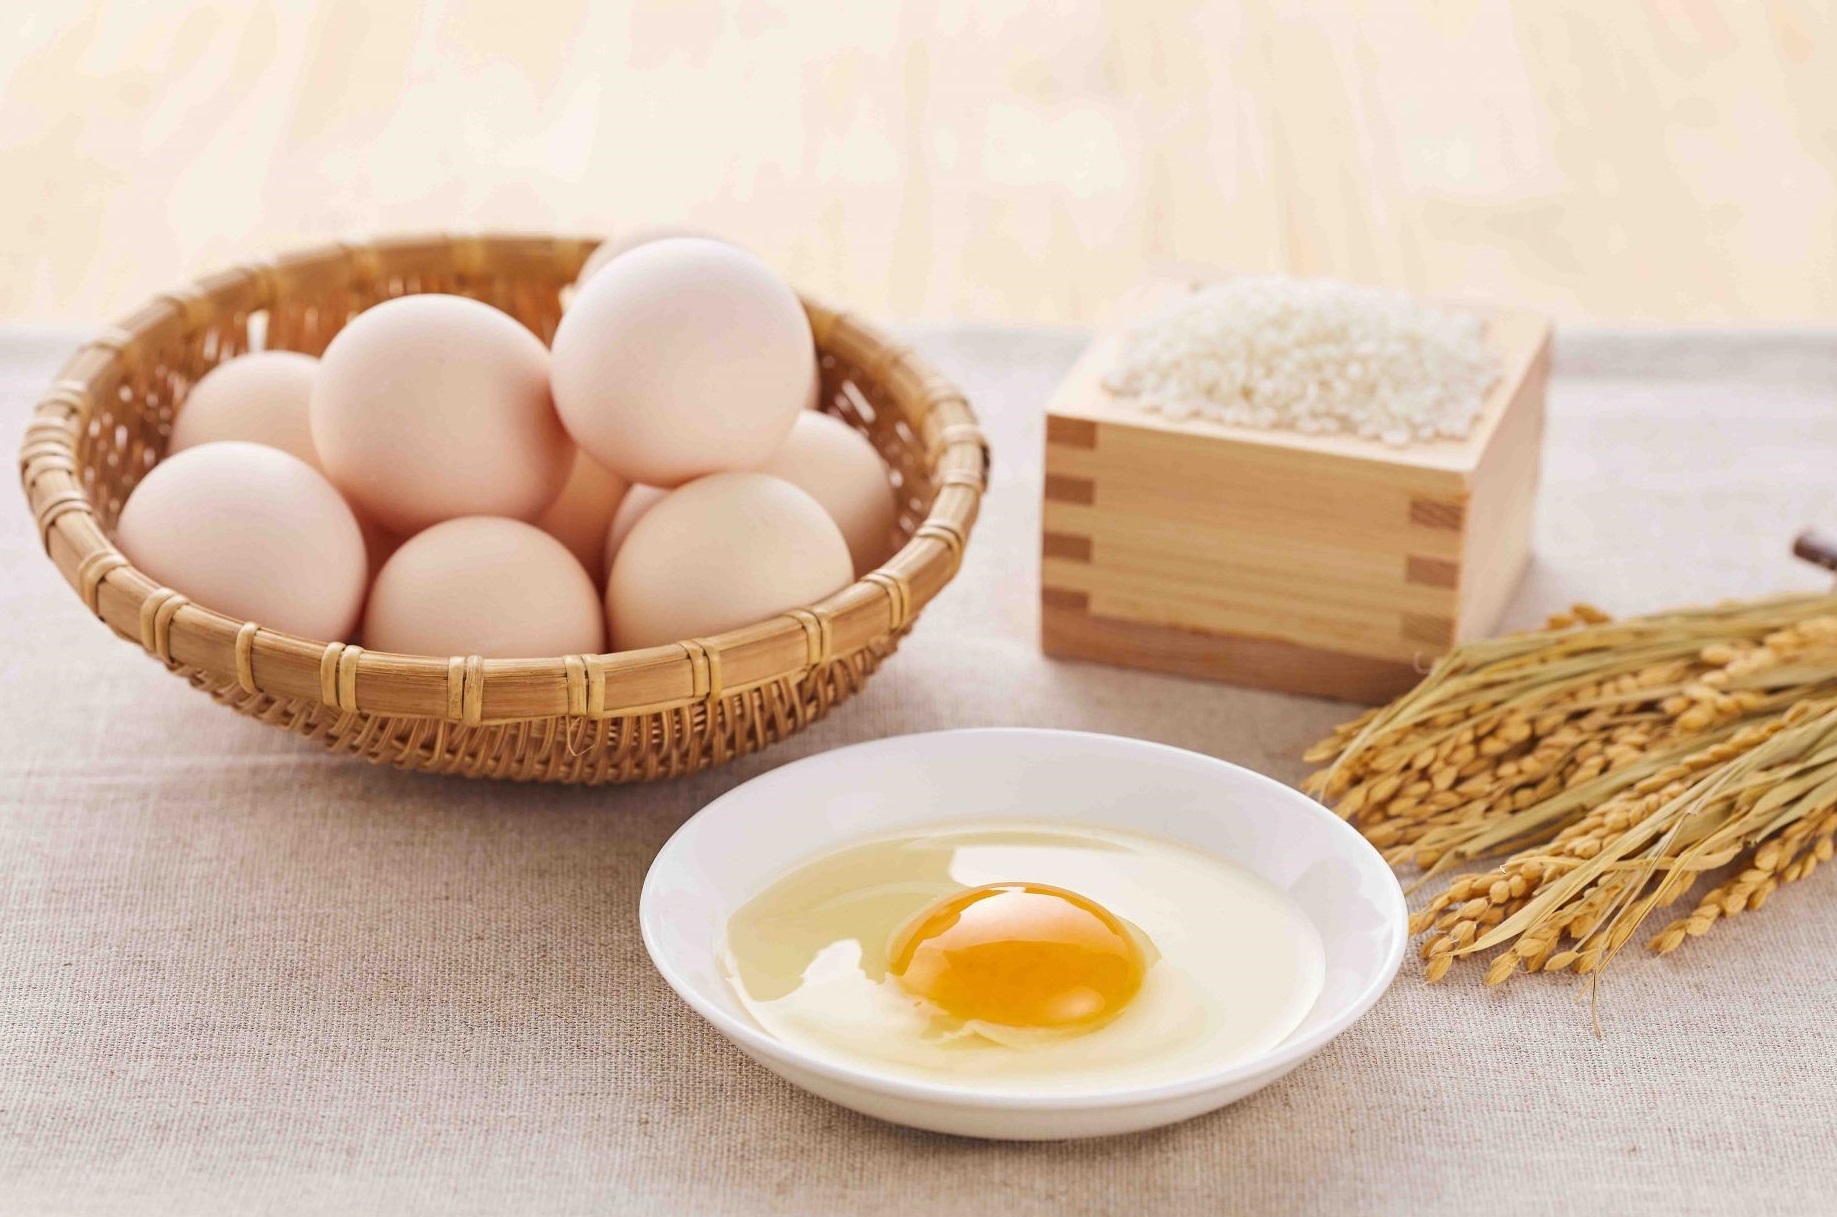 Theo các chuyên gia dinh dưỡng, 1 quả trứng gà có mức năng lượng tương đối thấp 